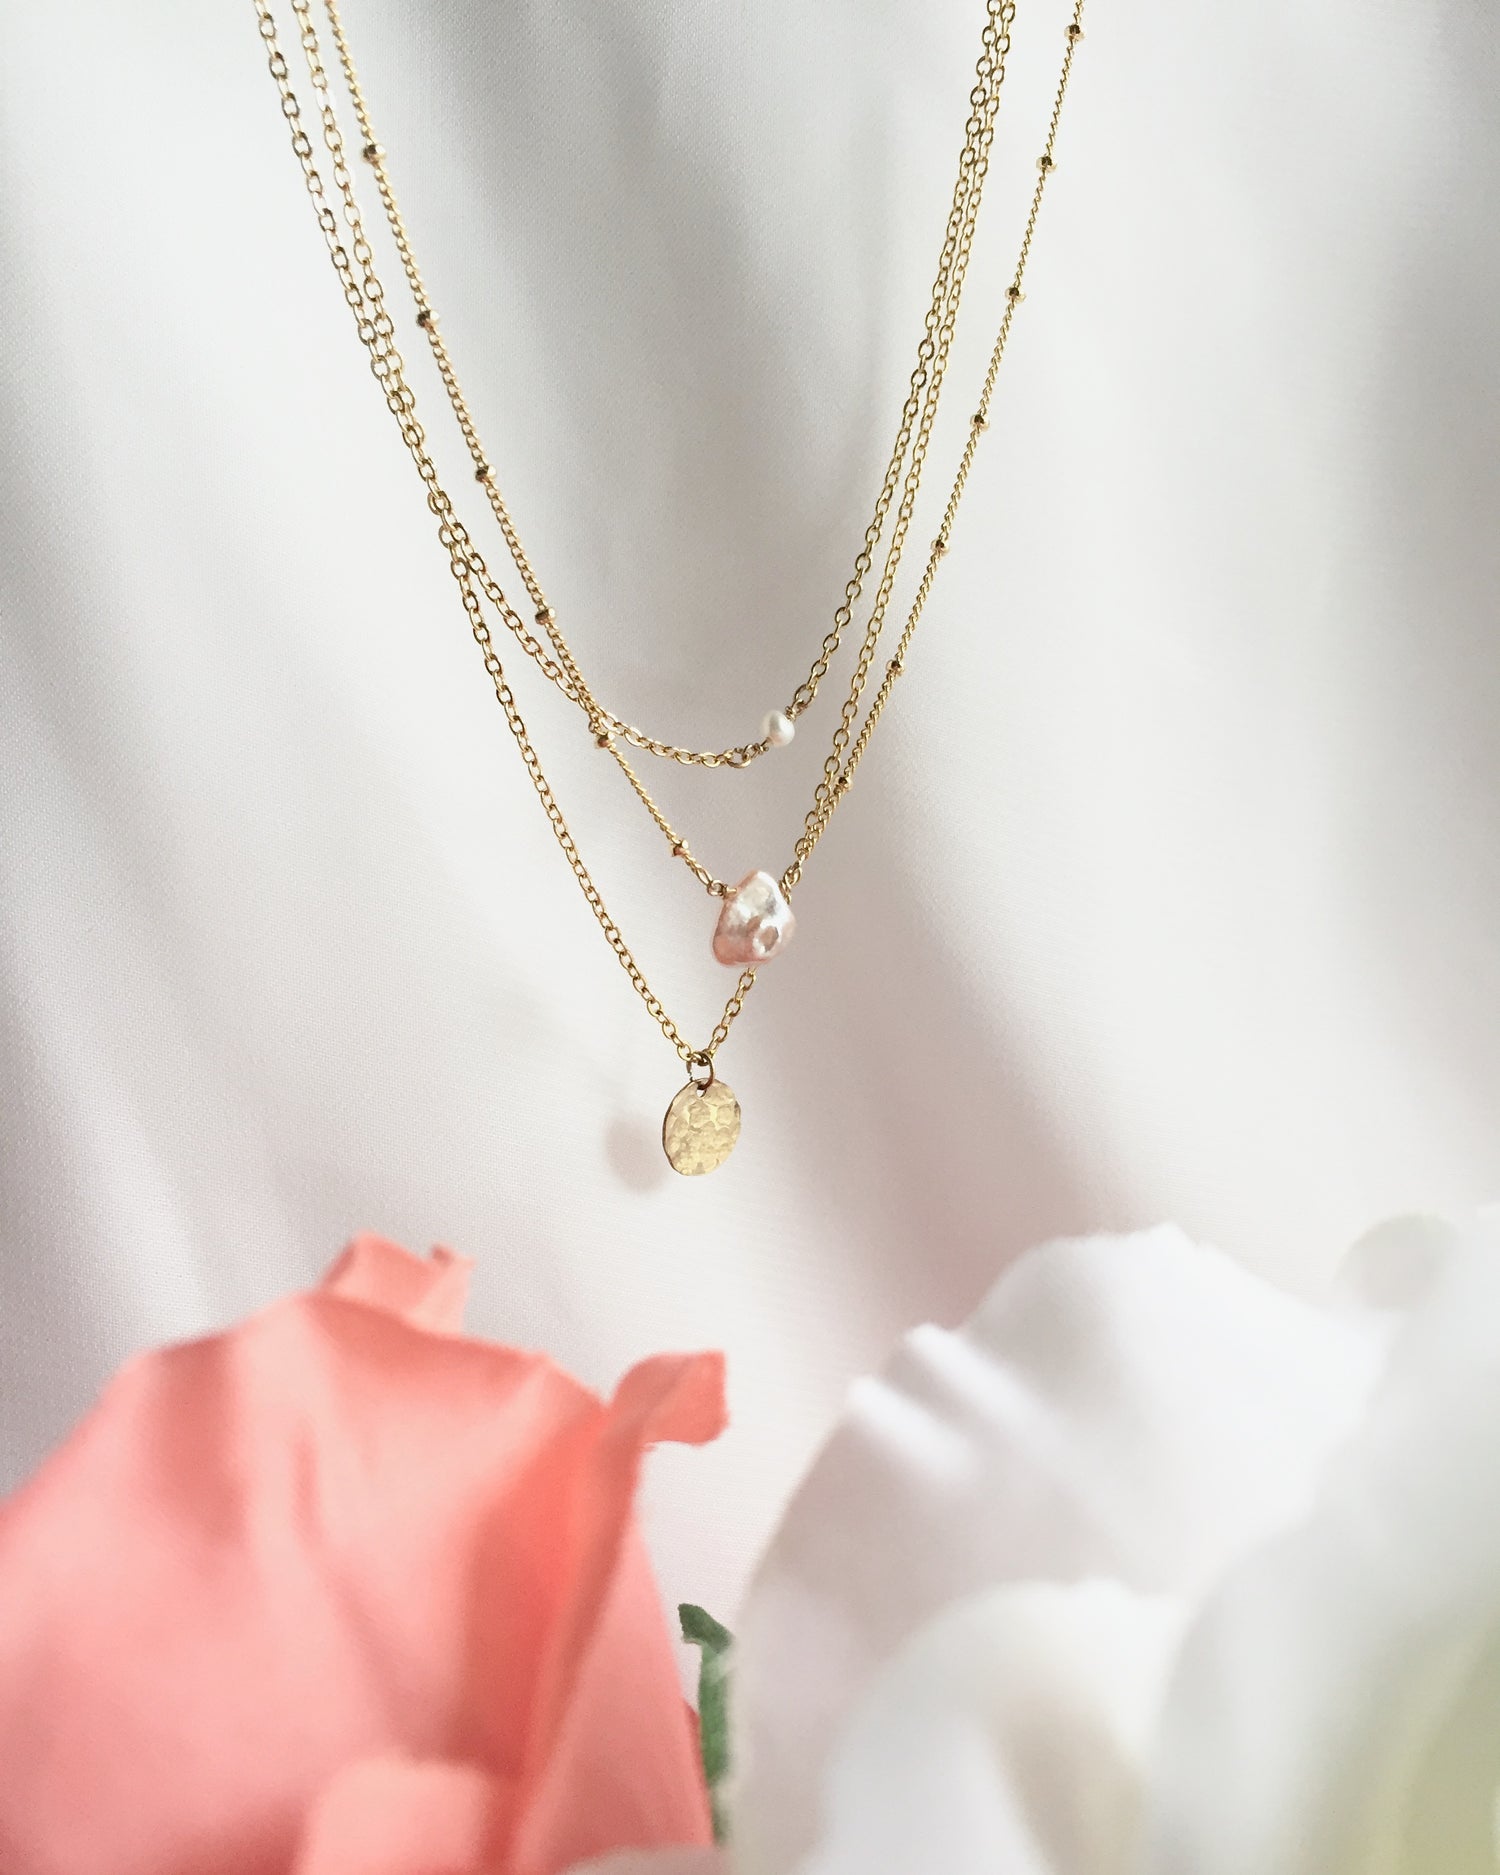 Handmade Delicate Everyday Necklaces | IB Jewelry